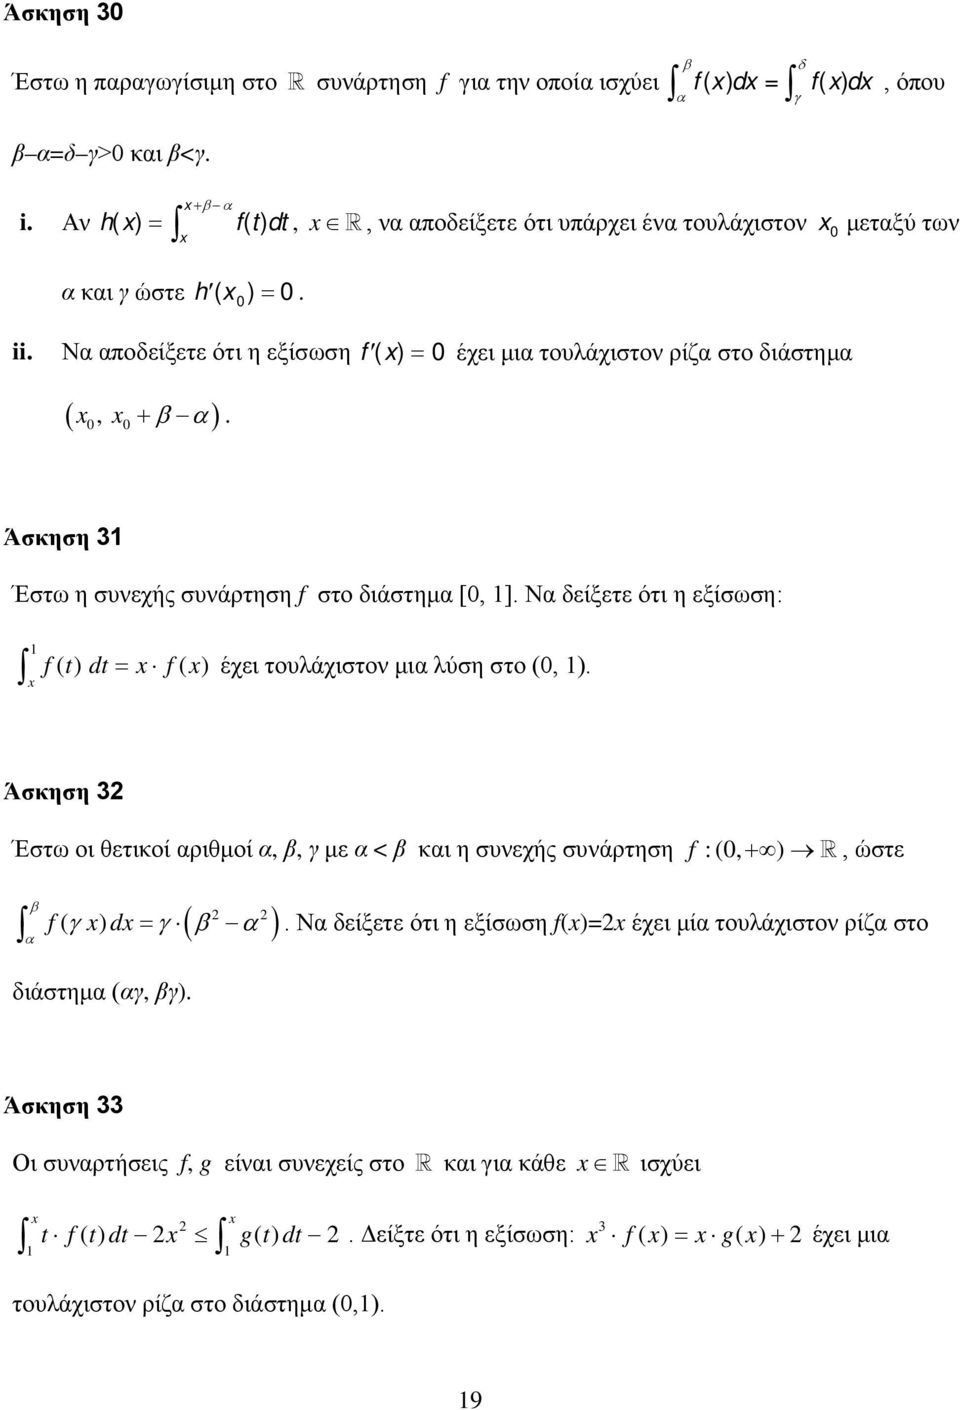 Άσκηση 3 Έστω η συνεχής συνάρτηση f στο διάστημ [, ]. N δείξετε ότι η εξίσωση: f (t) dt = f () έχει τουλάχιστον μι λύση στο (, ).